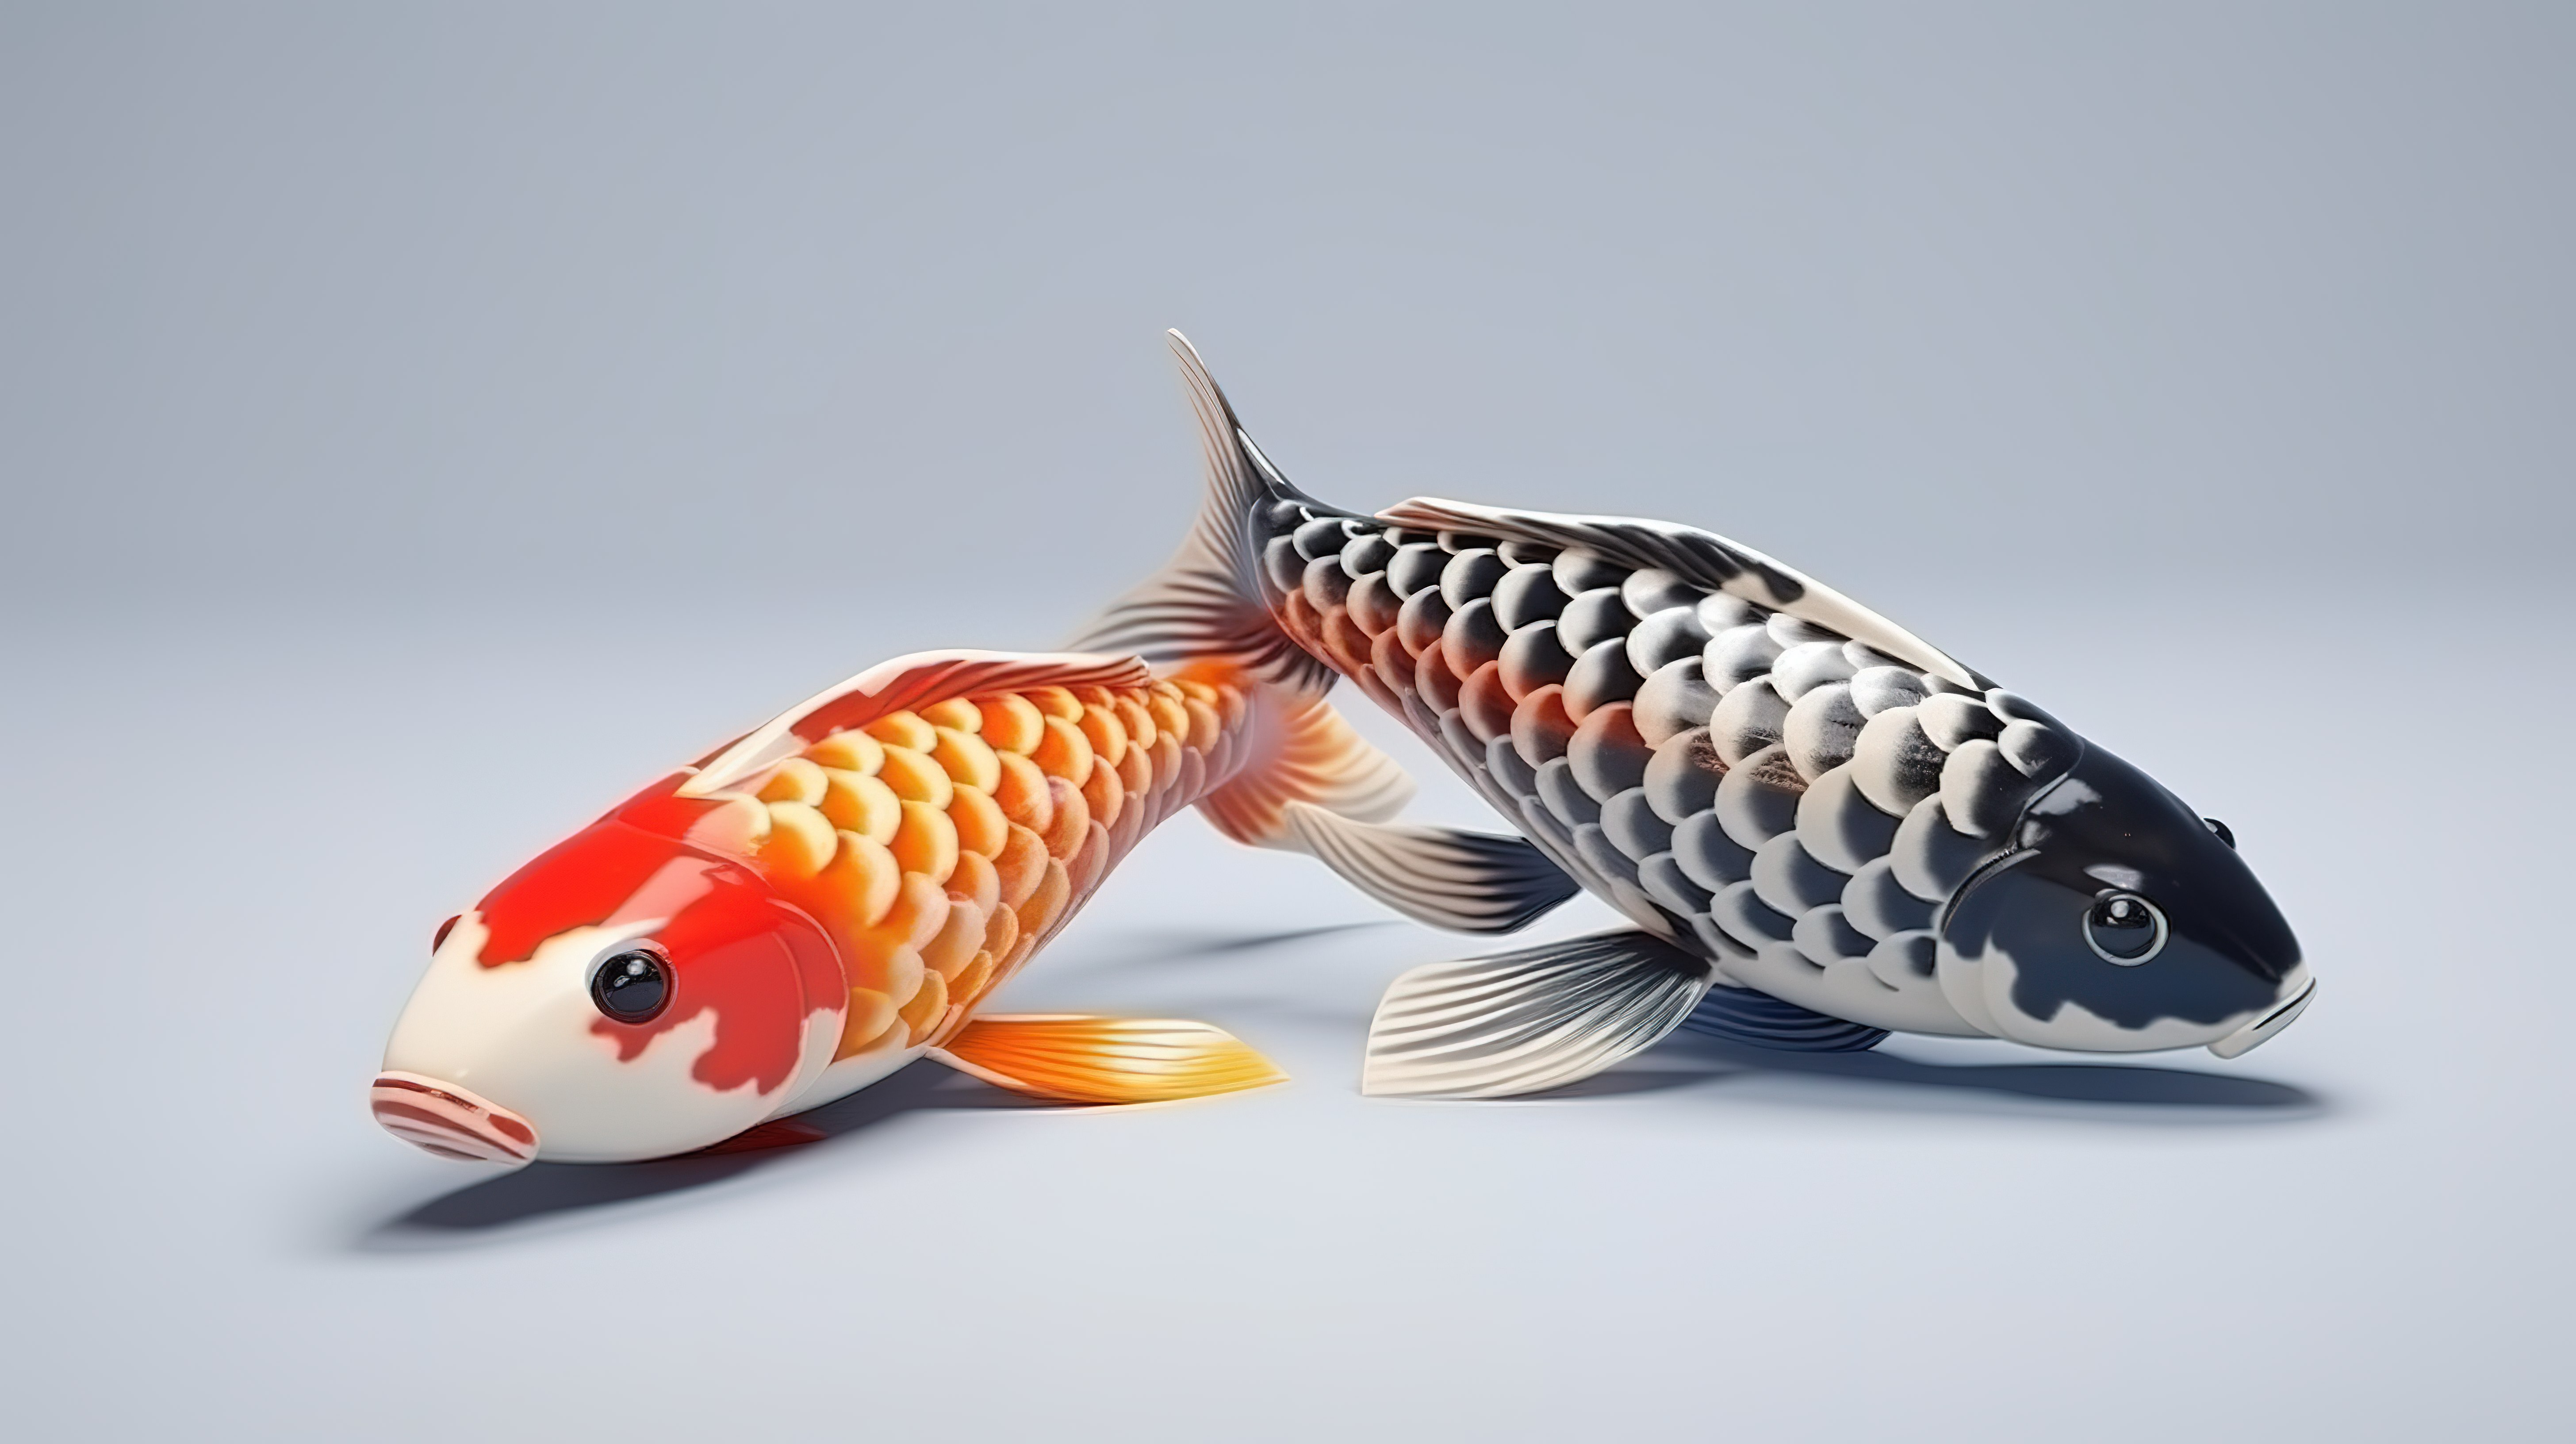 充满活力的 3D 渲染中的锦鲤鱼从侧面展示出引人注目的黑白橙色和红色色调图片